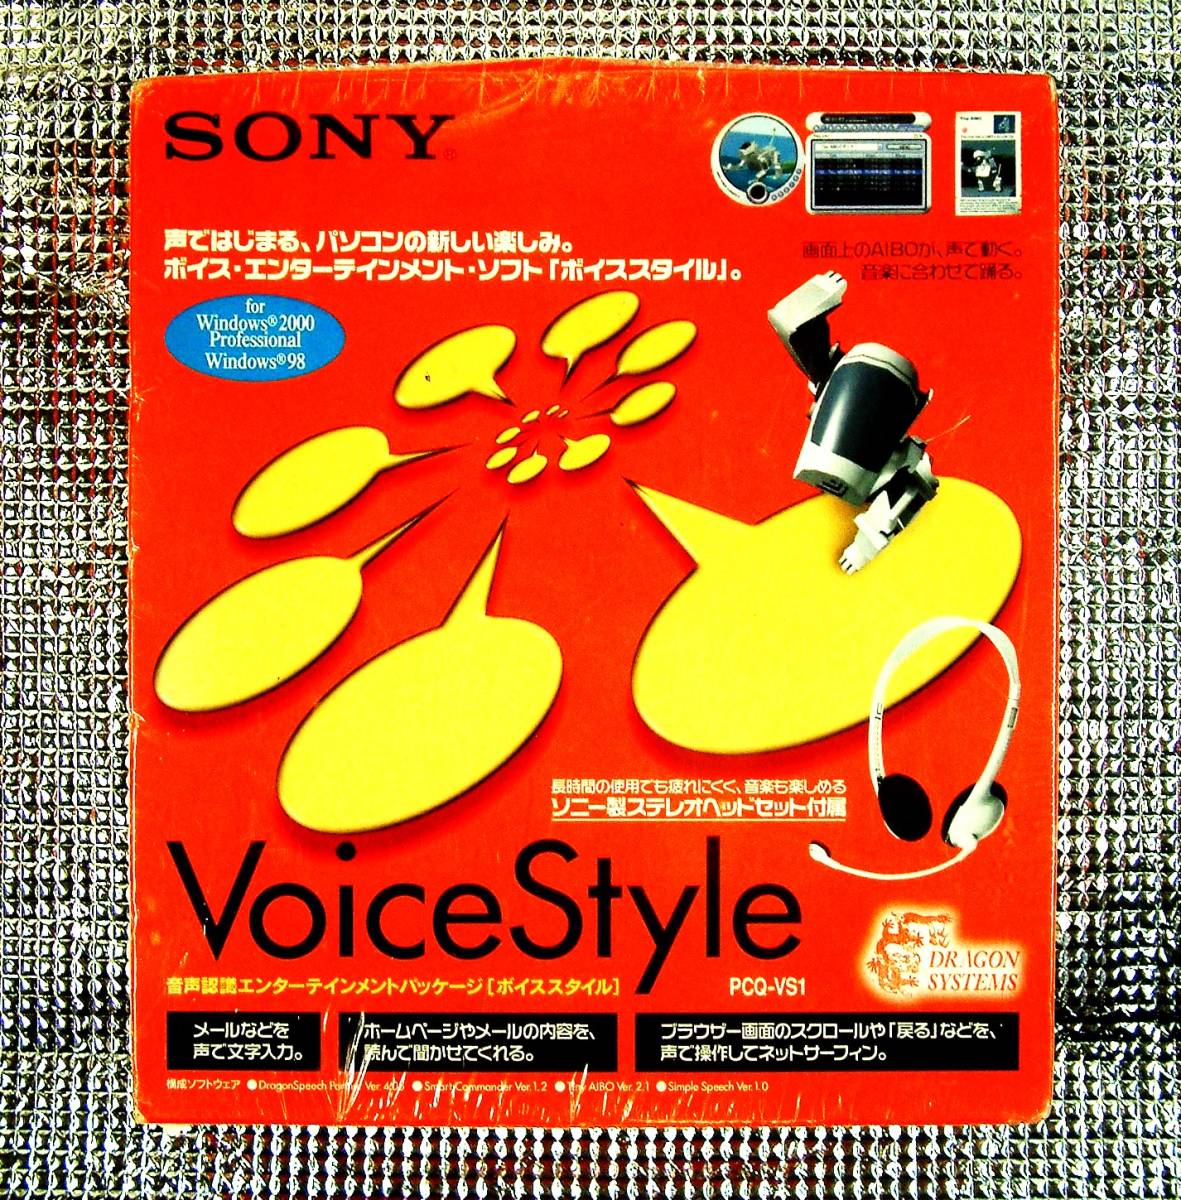 【4636】SONY ボイススタイル PCQ-VS1 ソニー VoiceStyle 音声認識 タイニーアイボ Tiny AIBO アイボ シンプルスピーチ スマートコマンダー